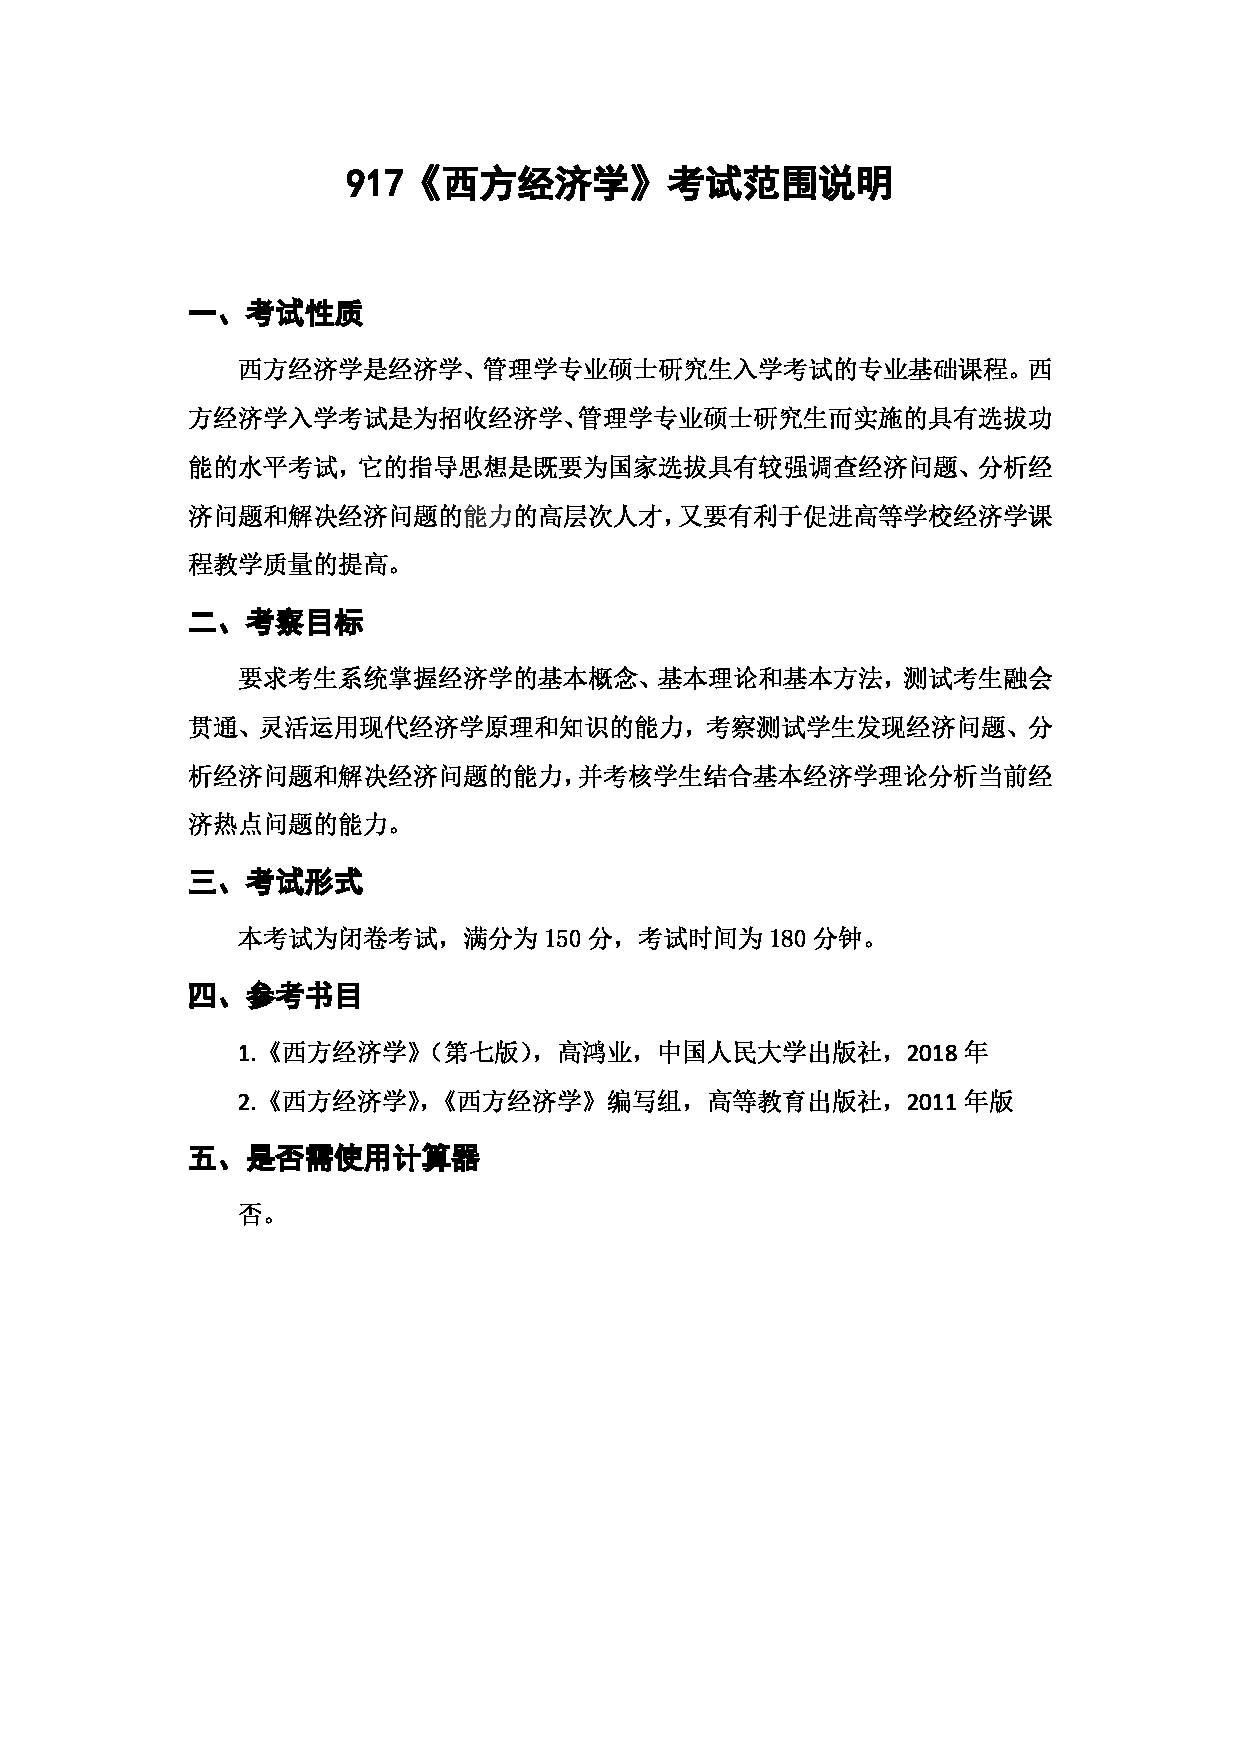 上海海洋大学2023年考研自命题科目 917《西方经济学》 考试范围第1页